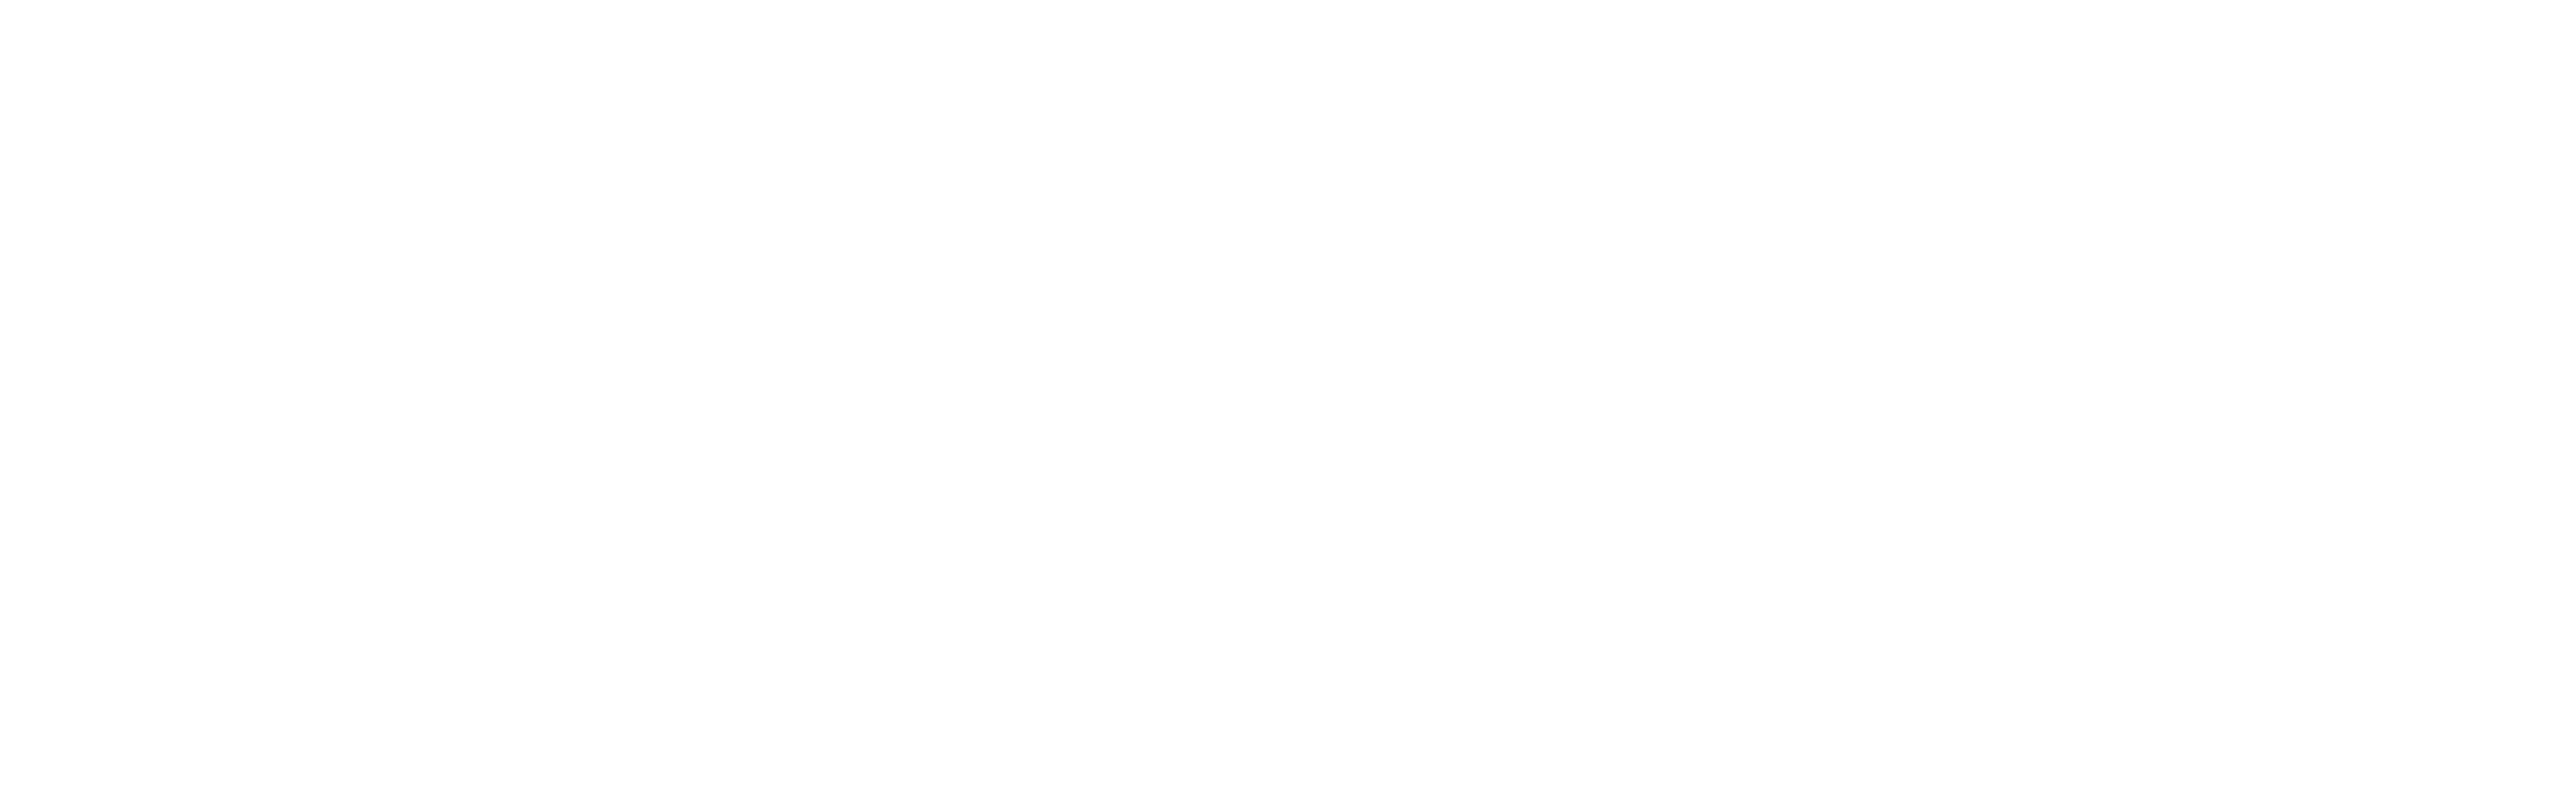 CrystalSound-logo-header